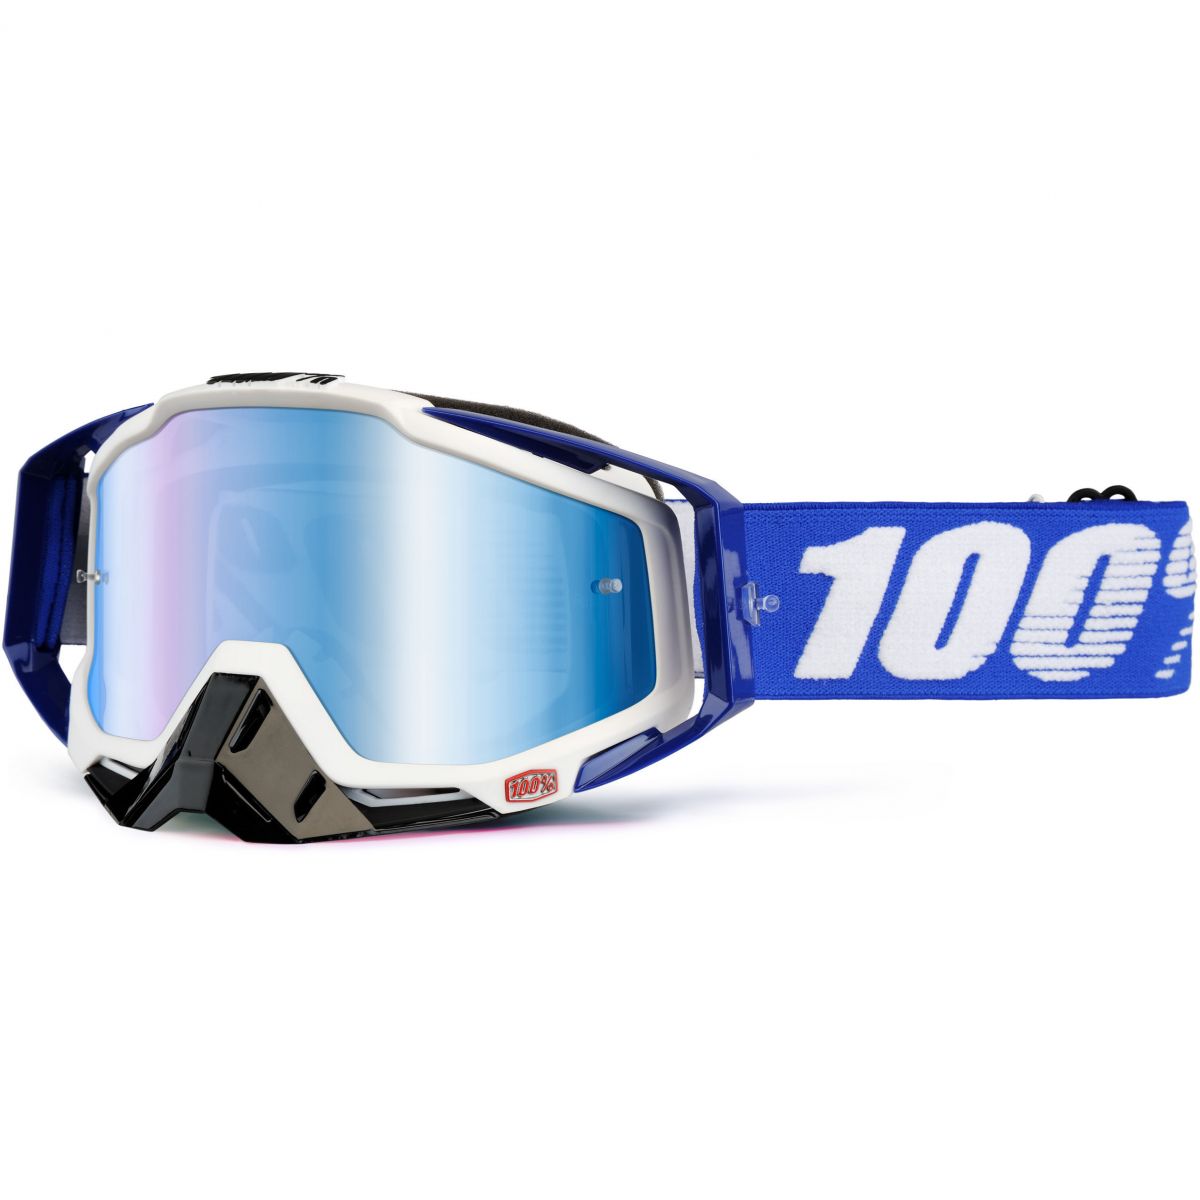 100% - Racecraft Cobalt Blue очки, линза зеркальная, синяя